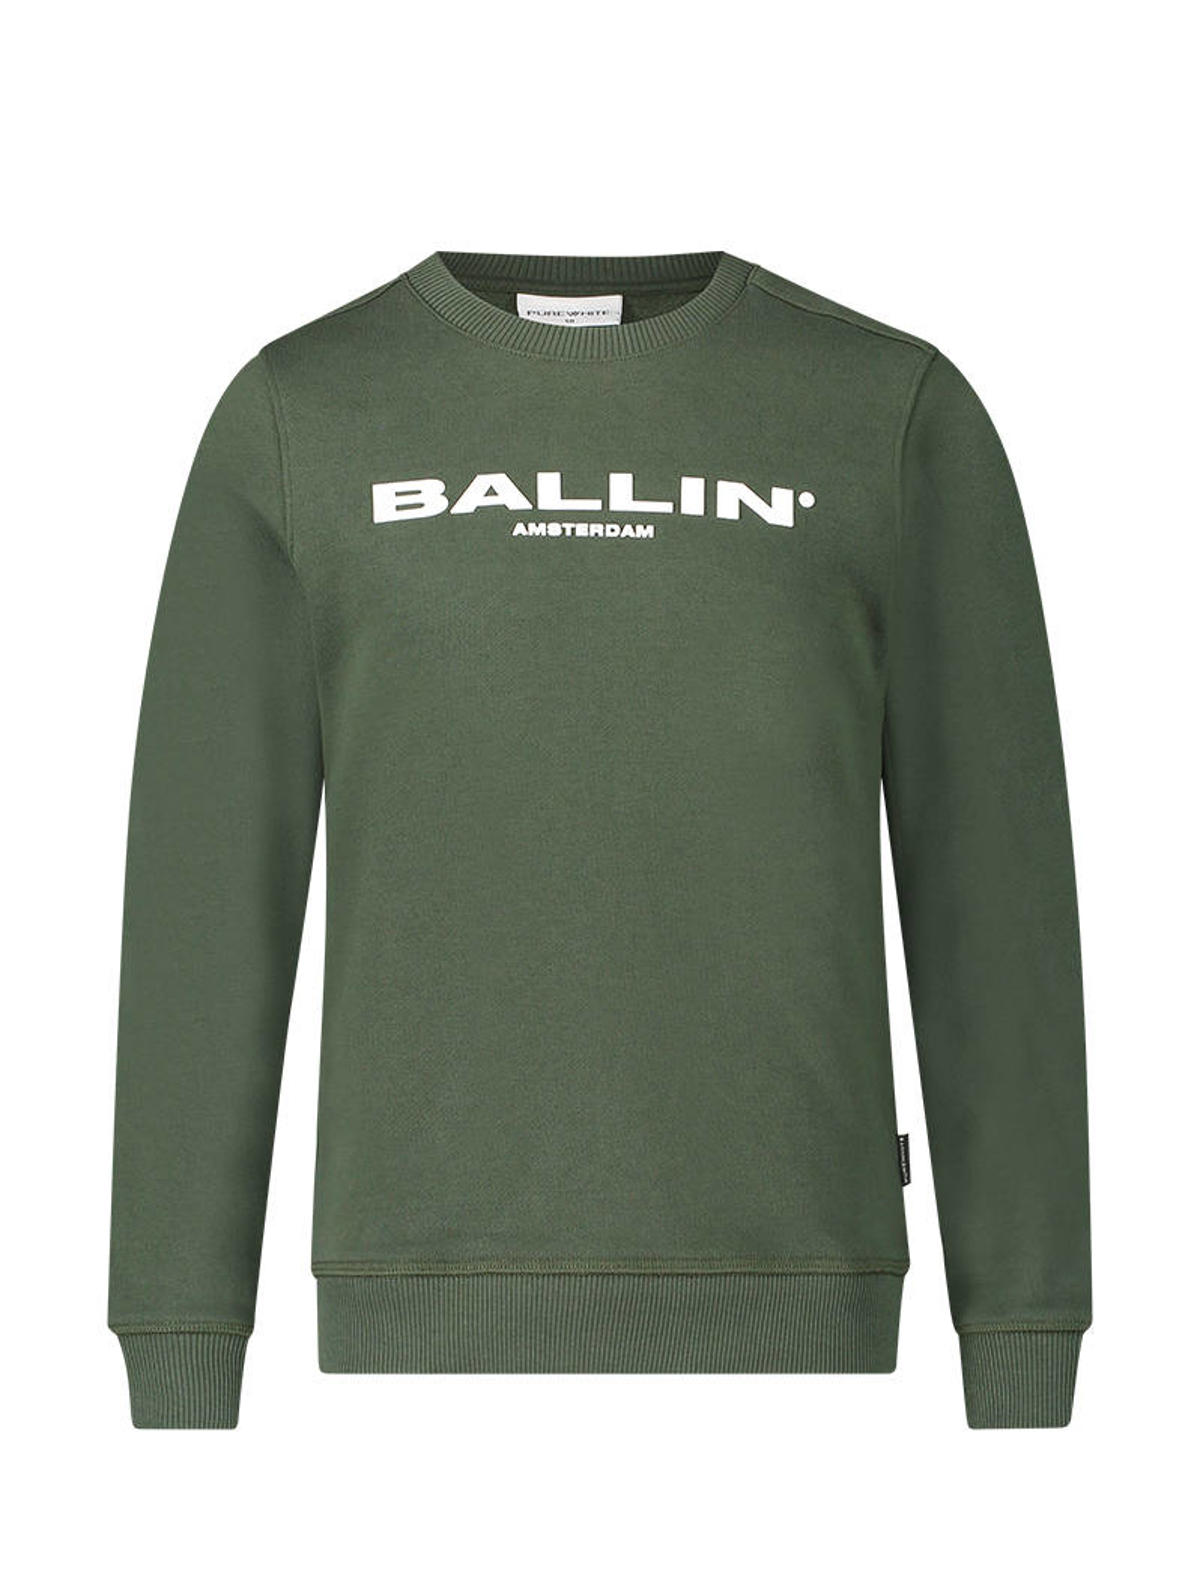 verwerken Vergevingsgezind Mathis Ballin unisex sweater met logo legergroen | wehkamp